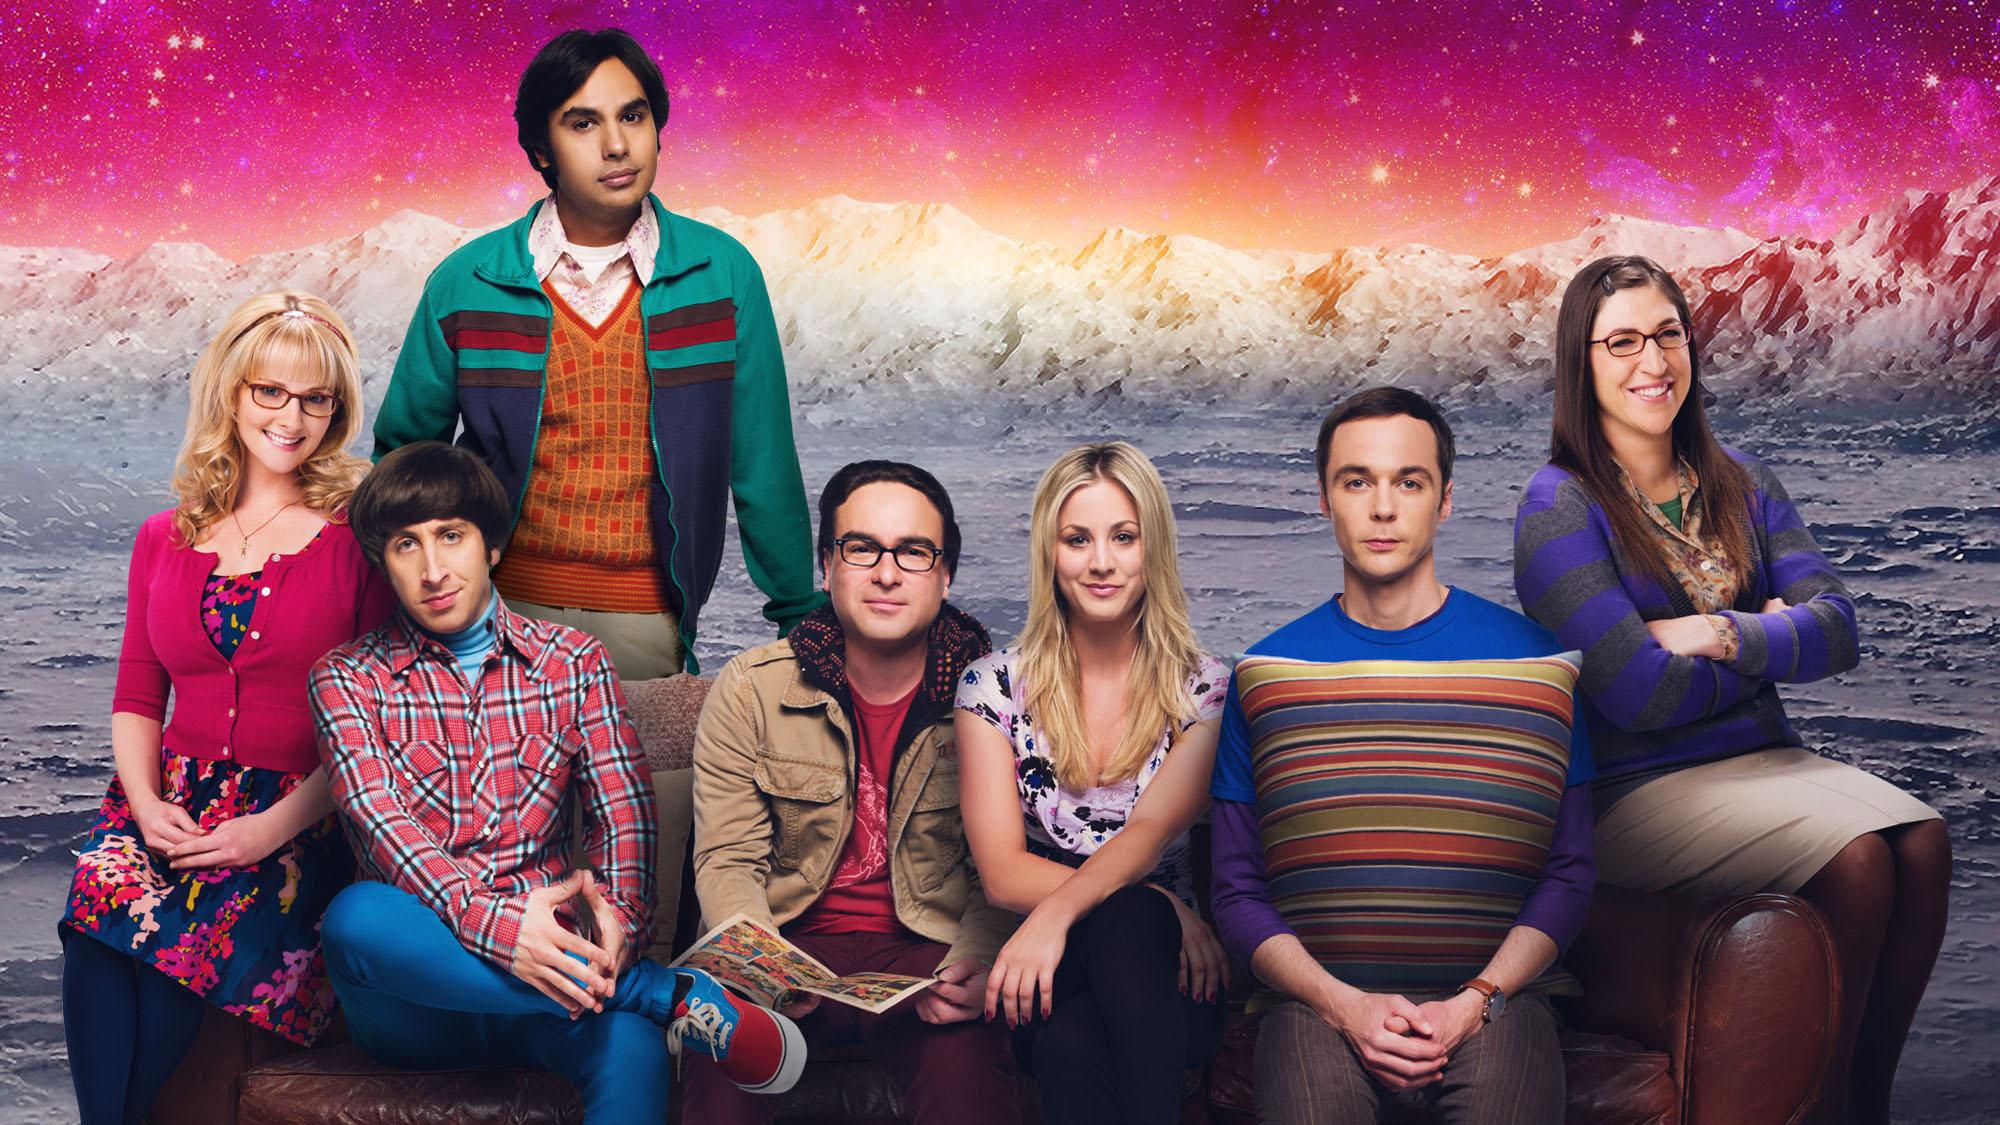 2000x1125 The Big Bang Theory 2019 Wallpaper on WallpaperBat.